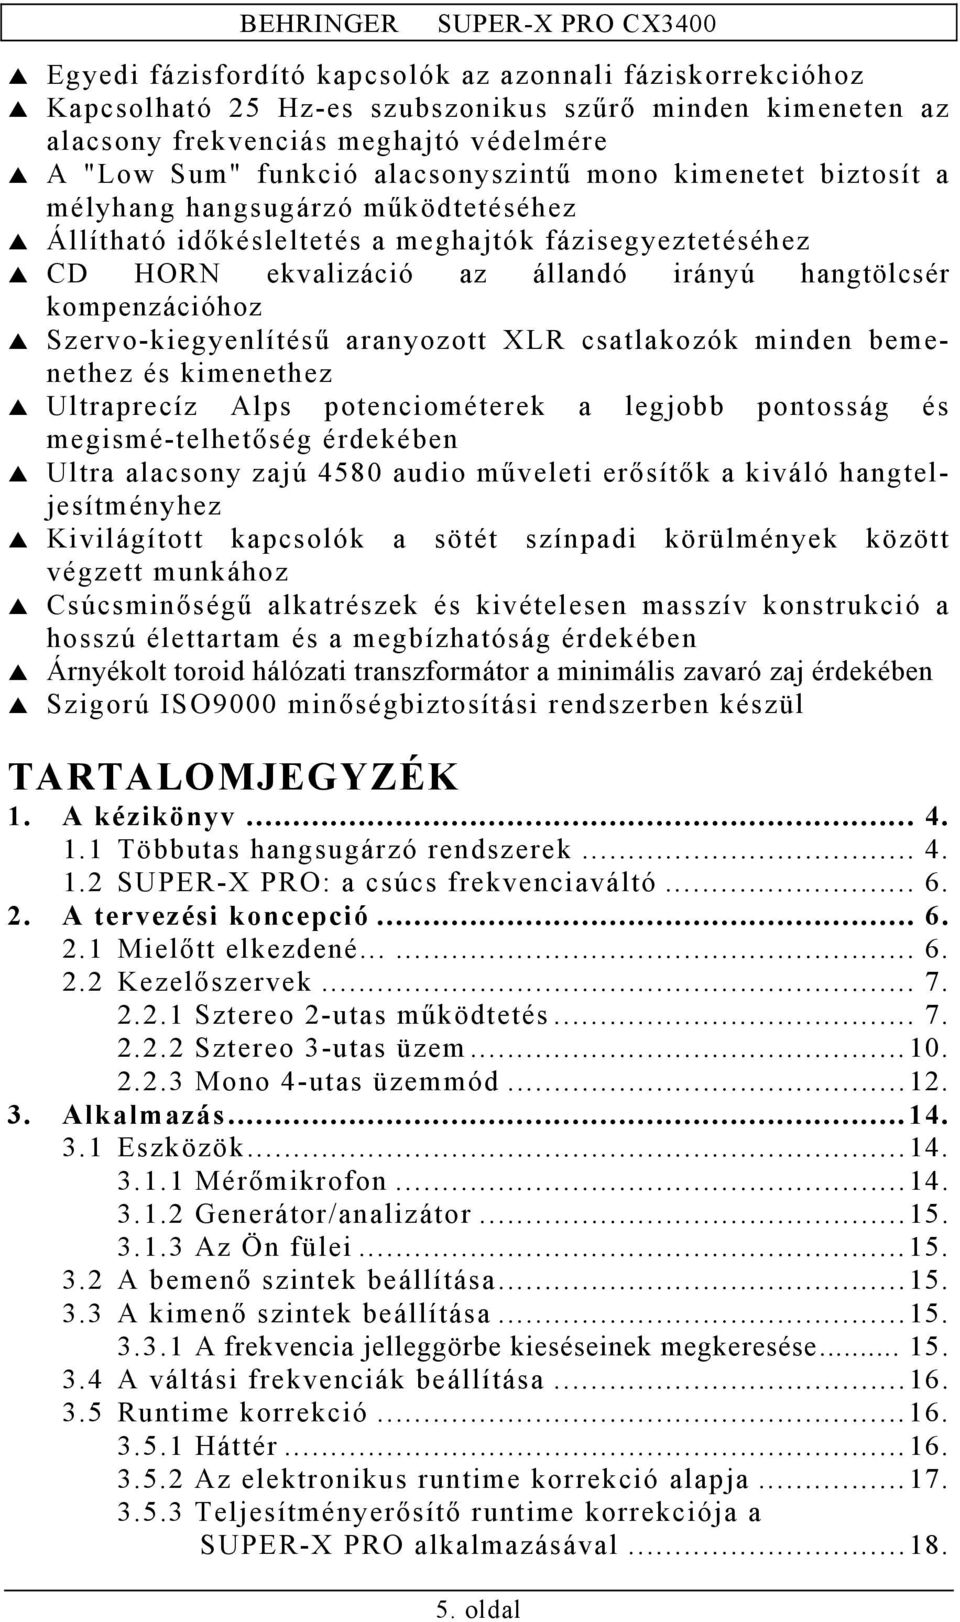 BIZTONSÁGI SZEMPONTOK - PDF Ingyenes letöltés